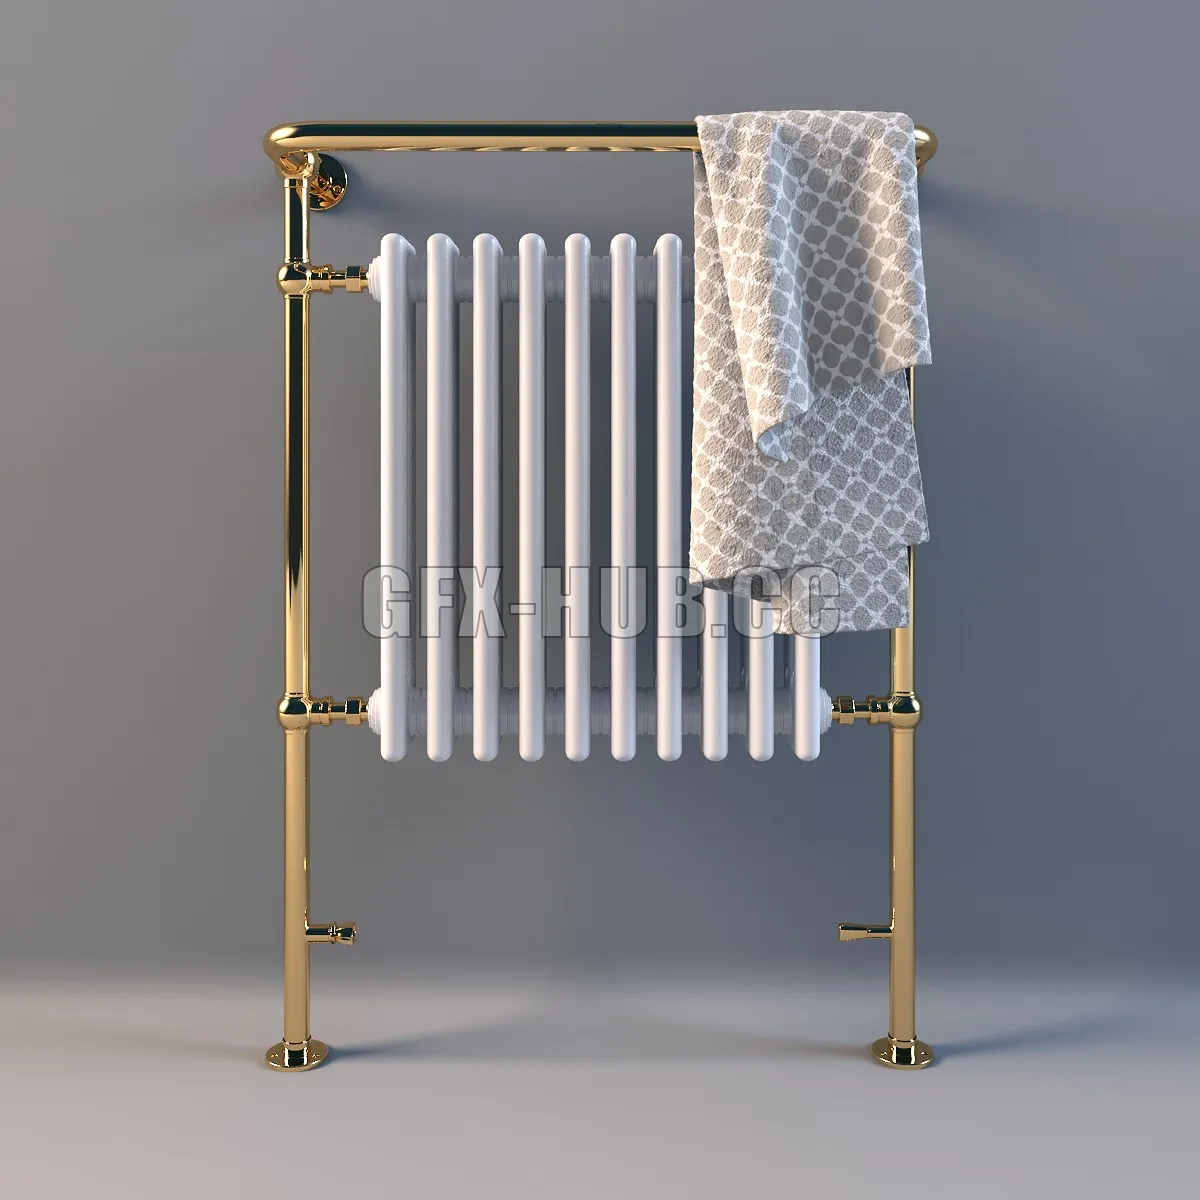 DOOR – Heated towel outdoor LineaTre